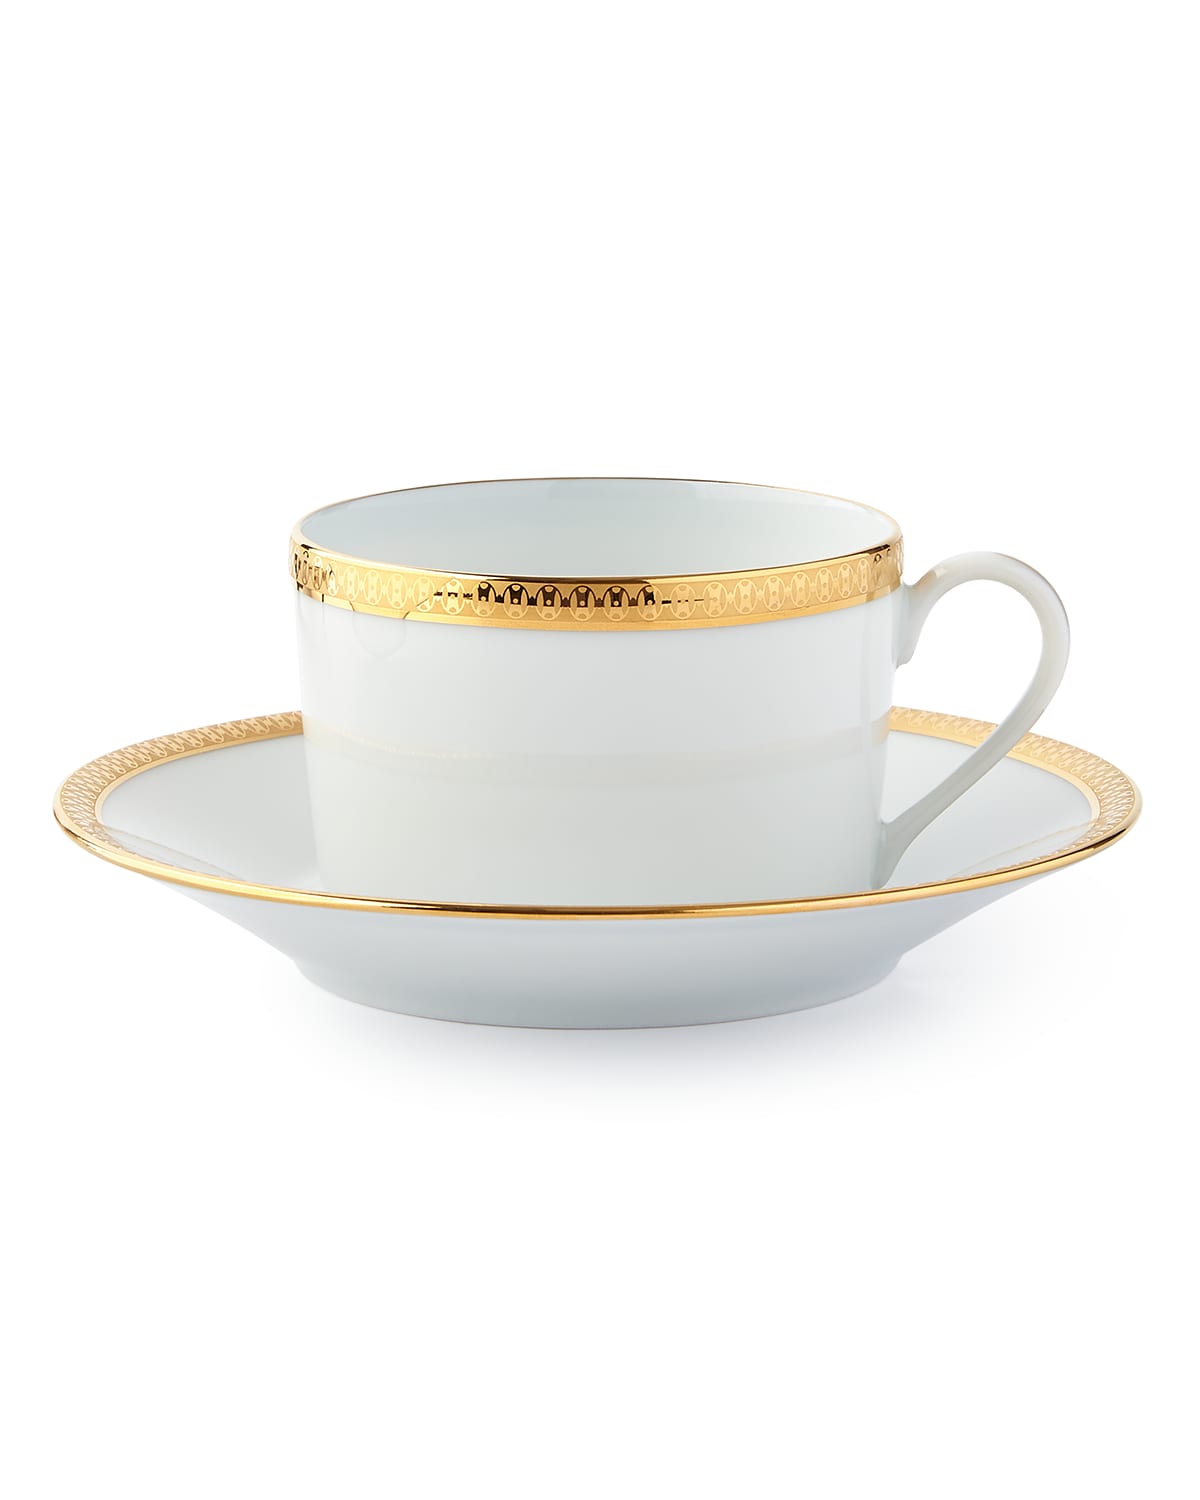 Haviland Symphony Gold Tea Cup & Saucer